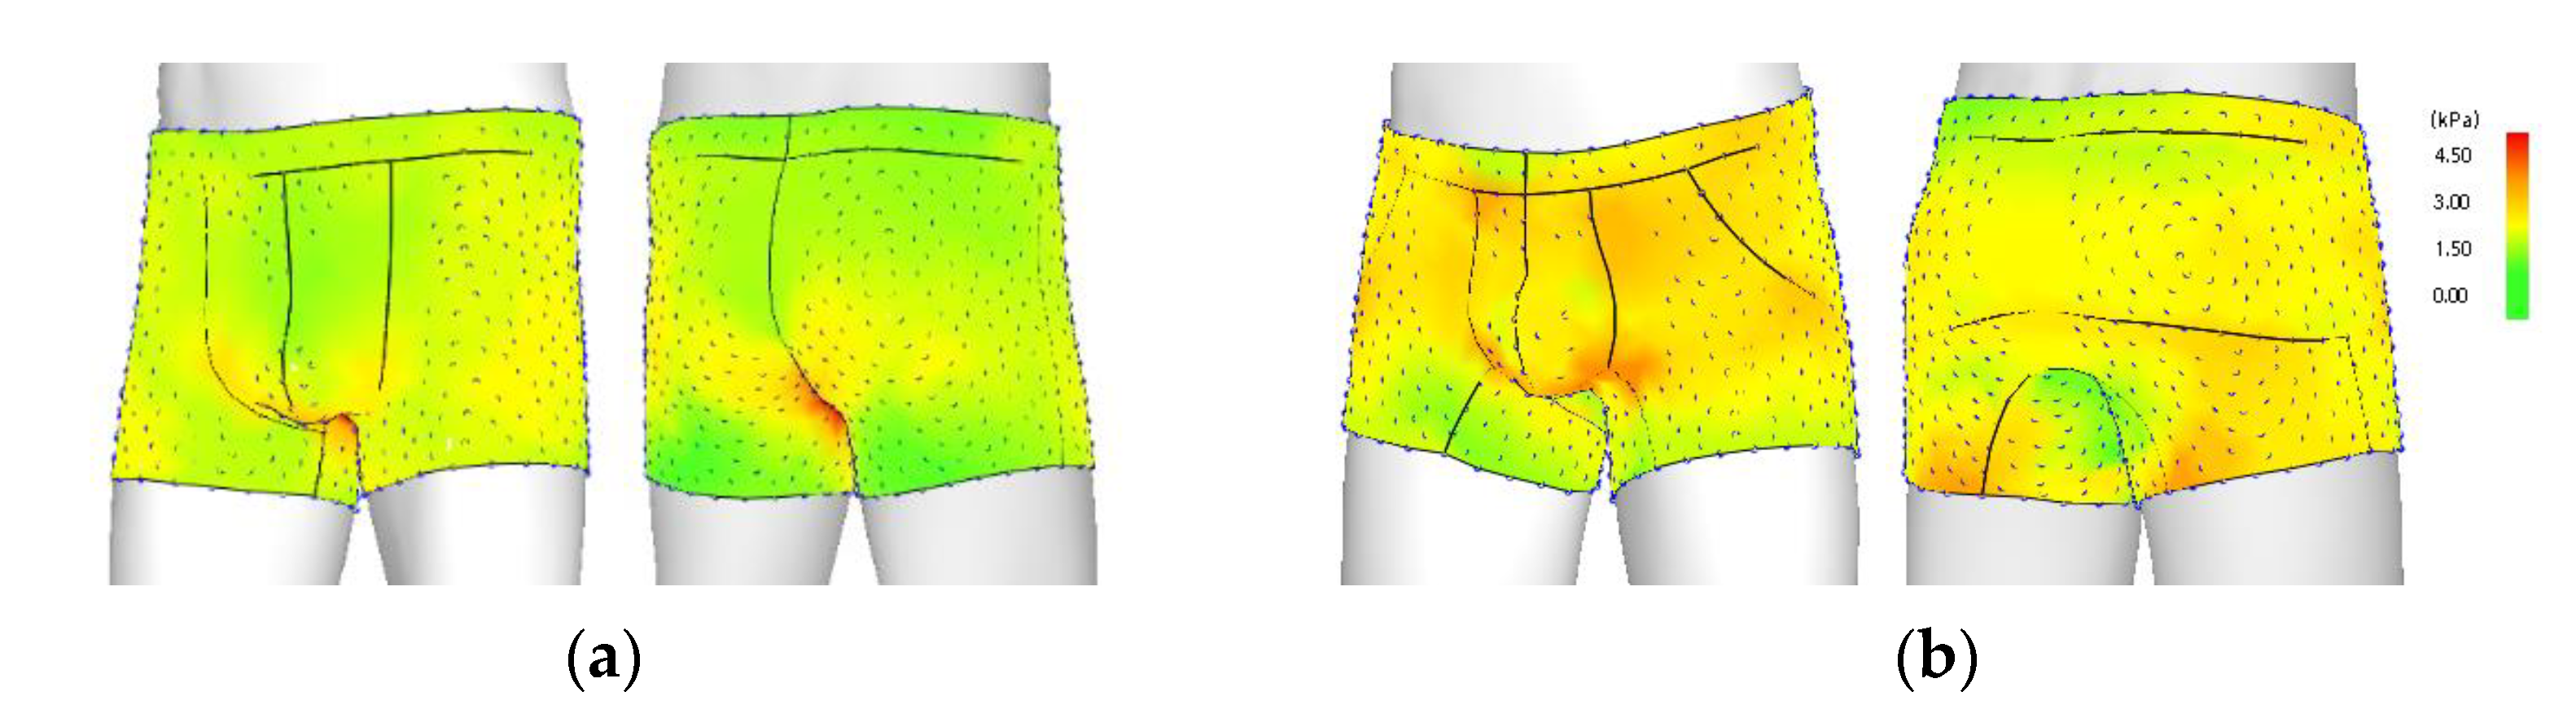 STUD on X: STUD BRIEFS: Men's Fertility Friendly Underwear https